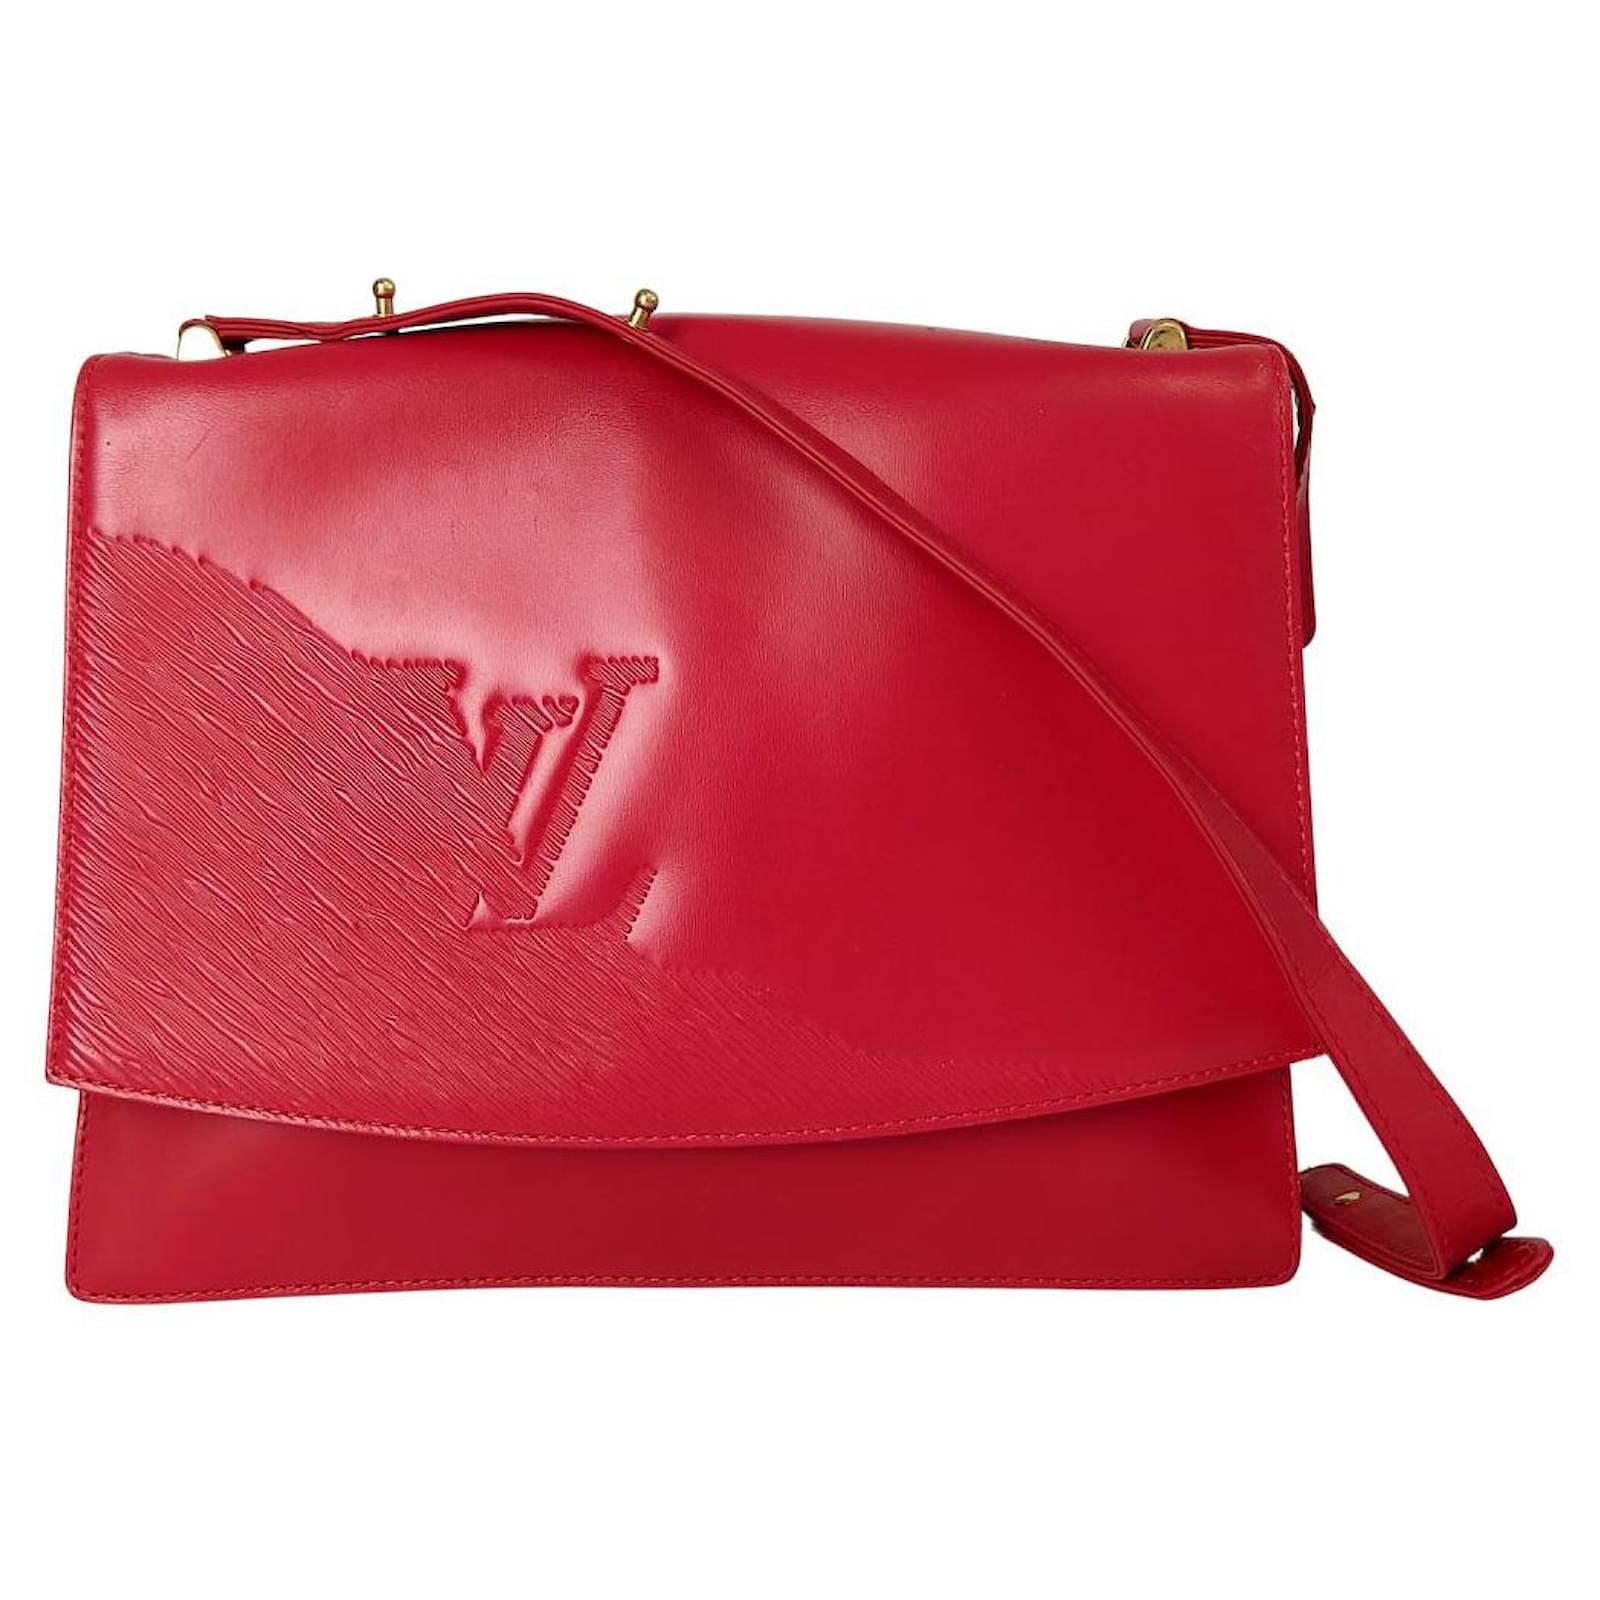 Louis Vuitton Monogram Cruiser Bag 45 M41138 Women's Boston Bag